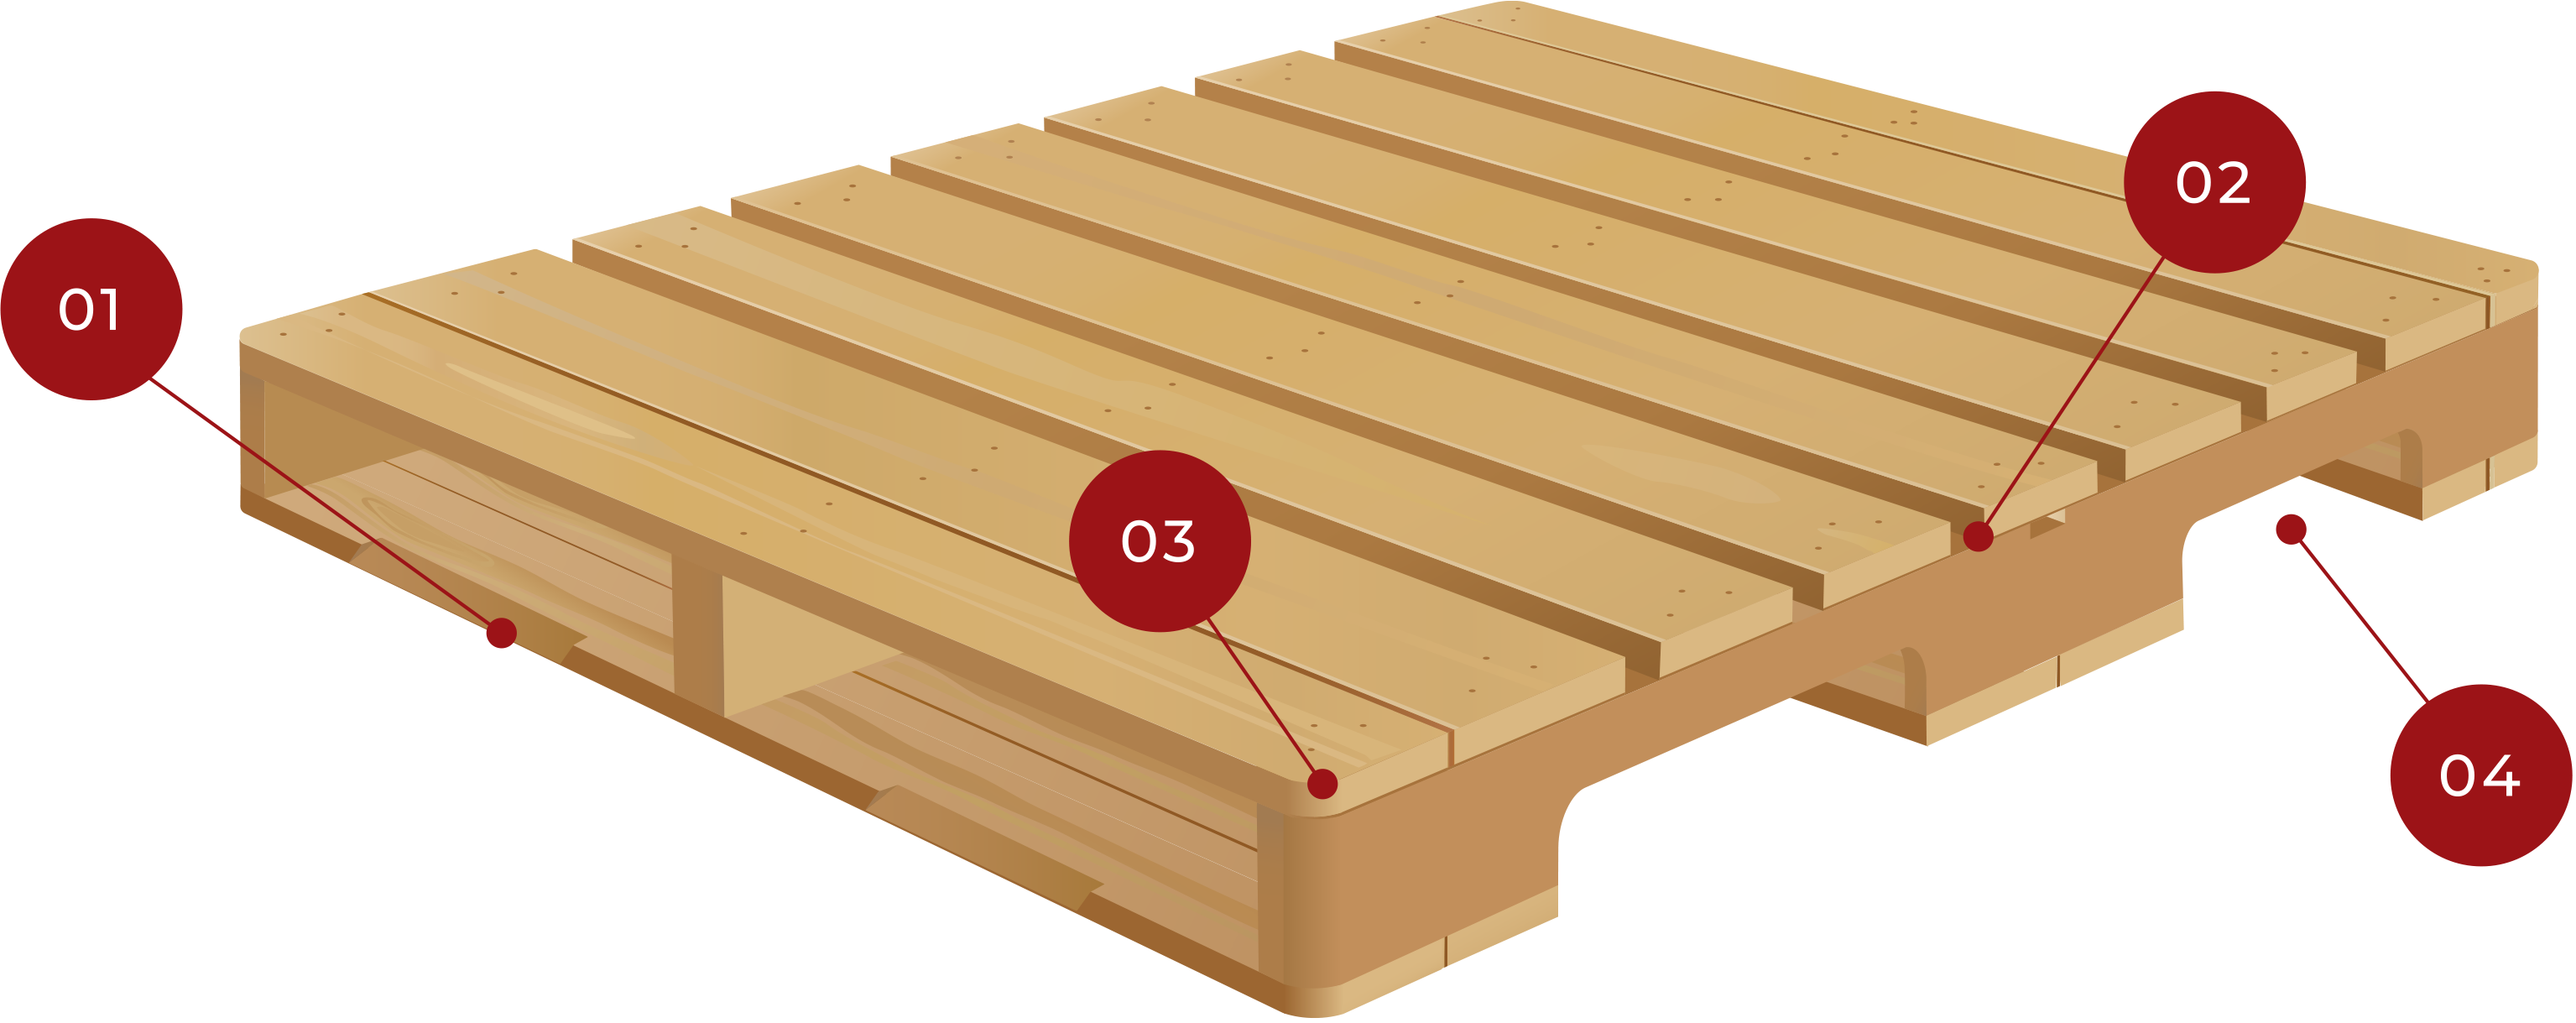 山室木材工業株式会社 木製パレット 輸出用木箱の製造 販売から 自社開発の大型木材リサイクル